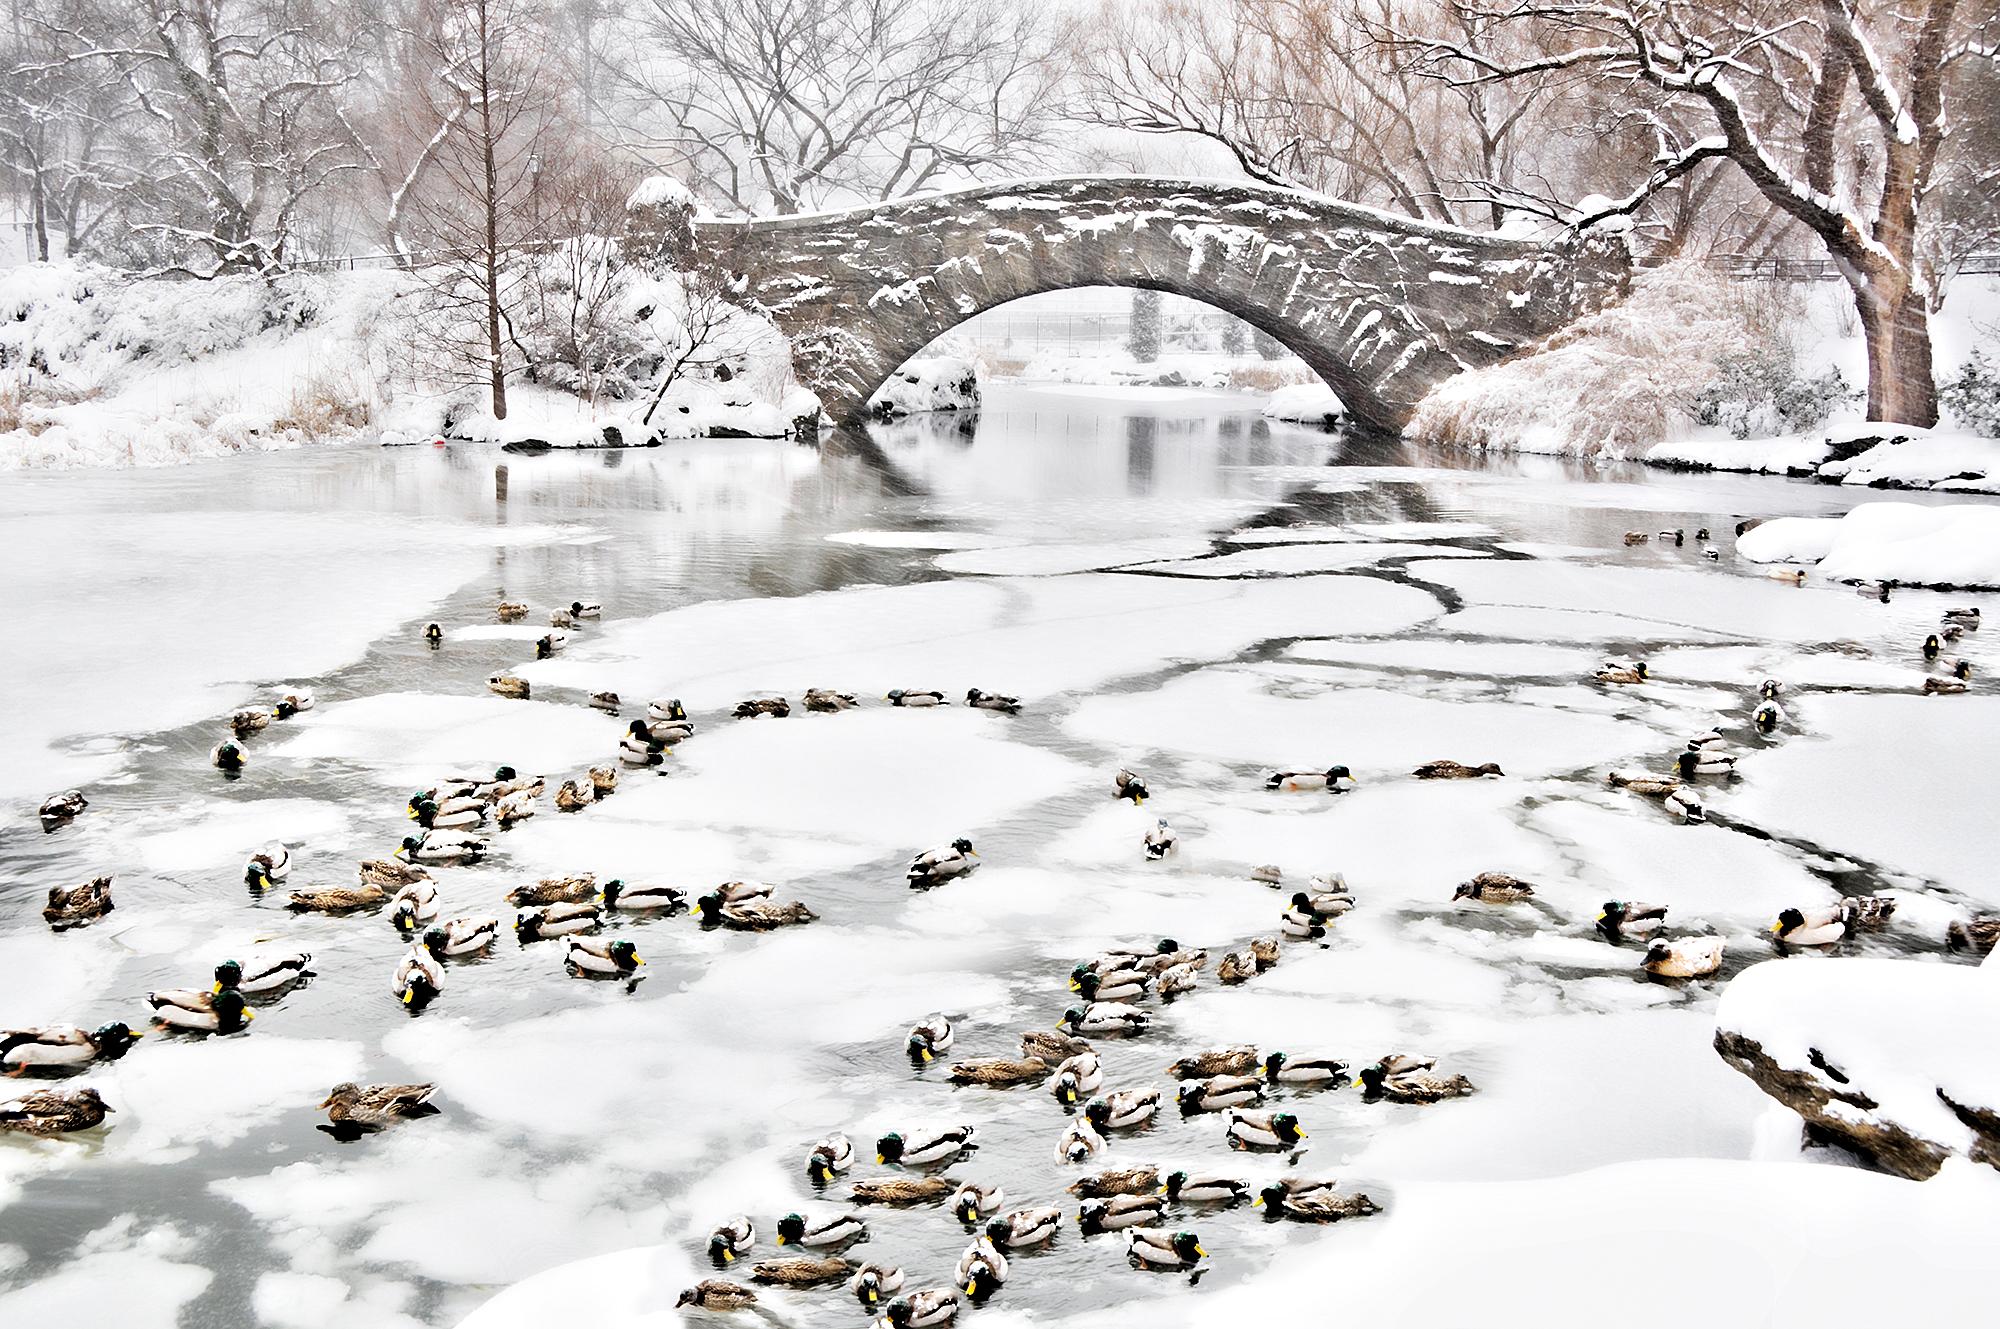 Ducks dans un étang givré dans le parc central enneigé de Snowy, New York